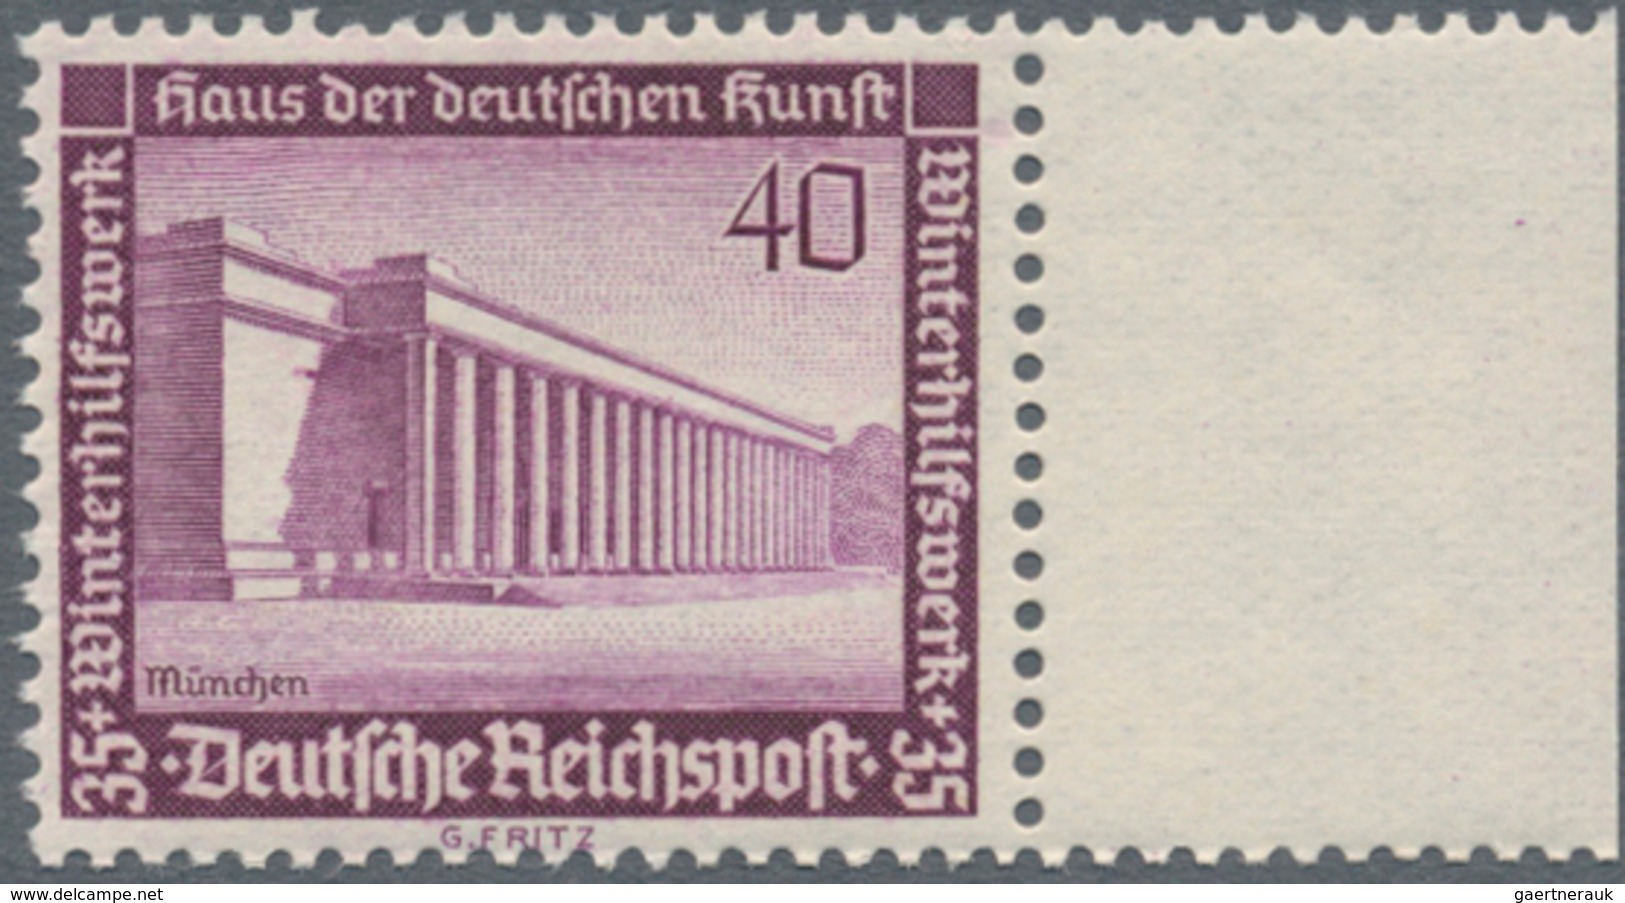 Deutsches Reich - 3. Reich: 1936, WHW, unkompletter Satz in Bogenteilen, Hauptwerte vielfach, Mi. ca